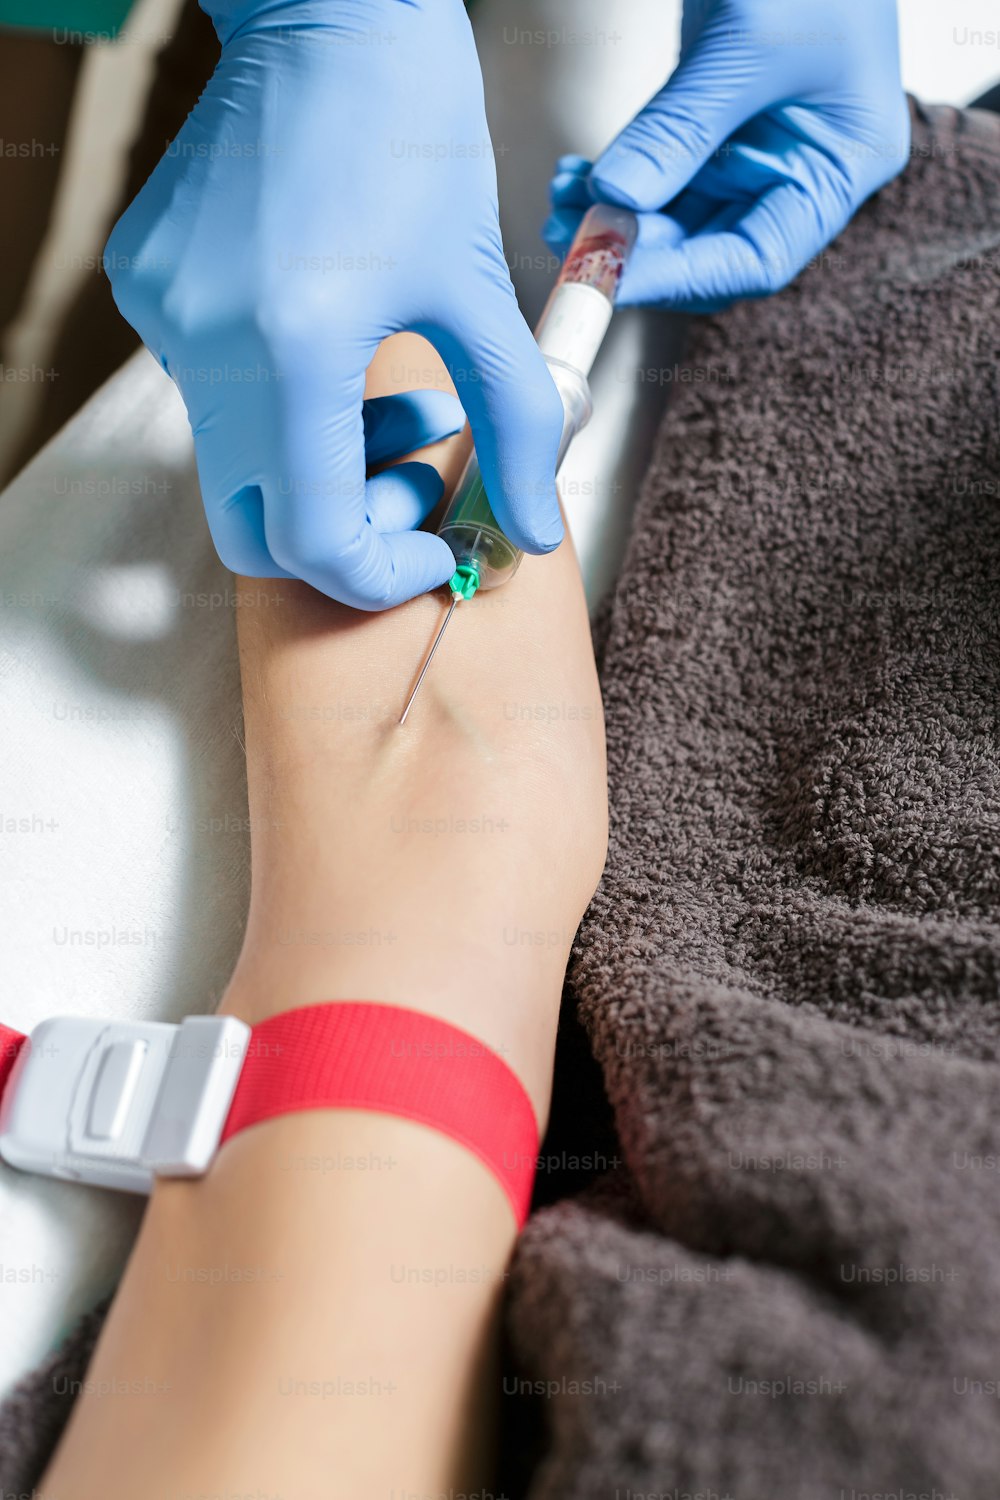 enfermeira que coleta amostra de sangue do braço do paciente. Preparação de sangue para o procedimento Plasmolifting.